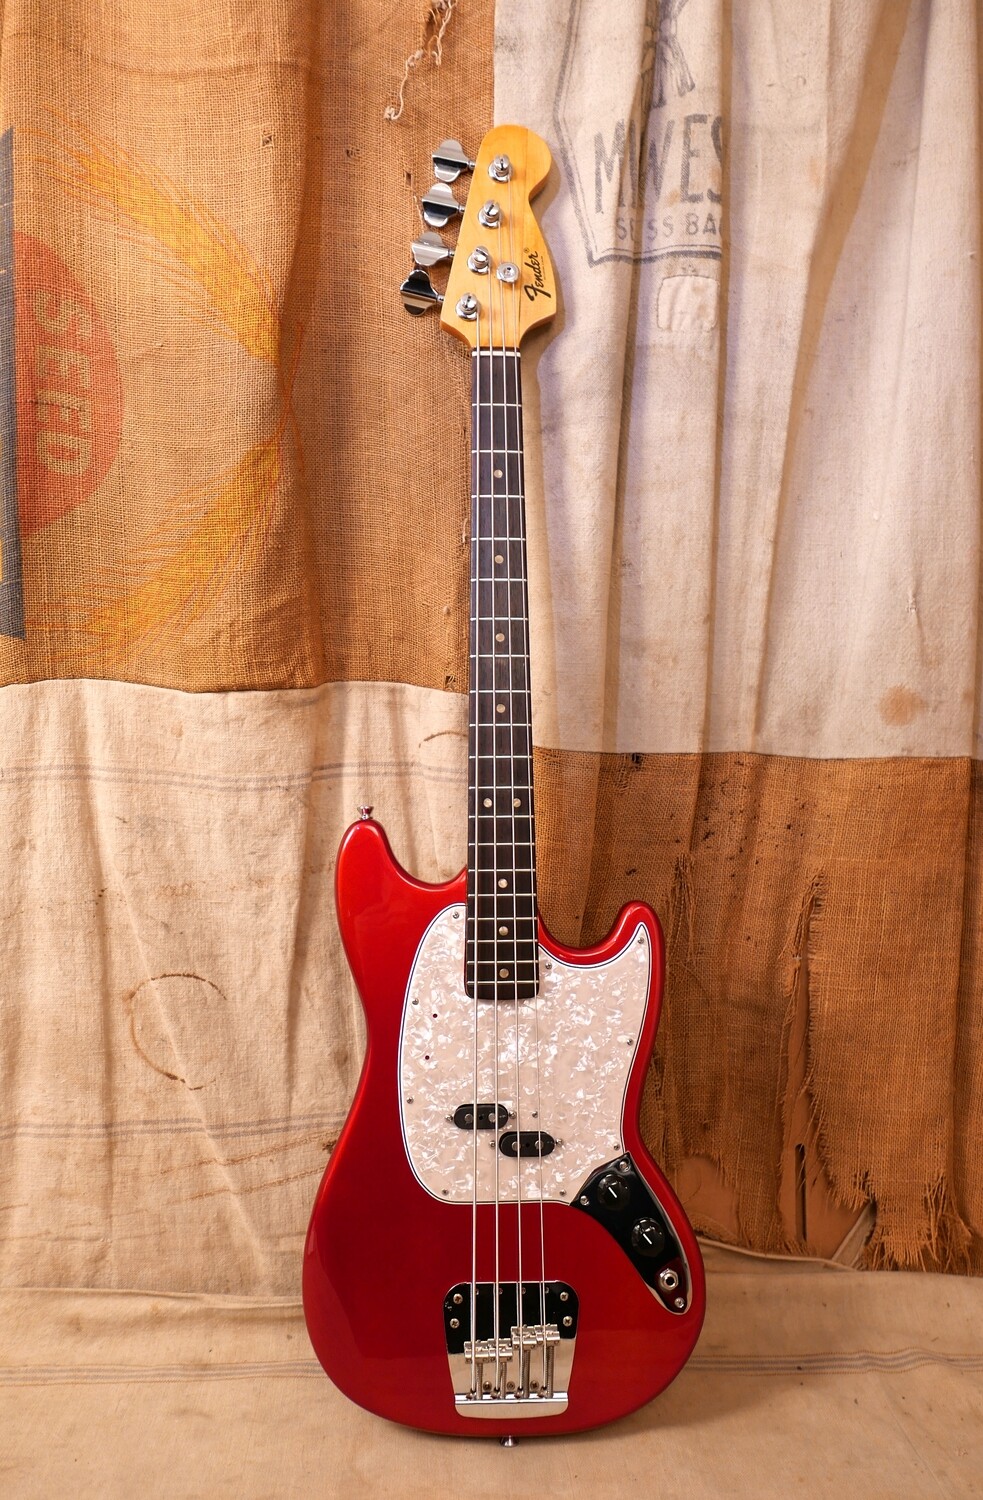 1970 Fender Mustang Bass Red Refin